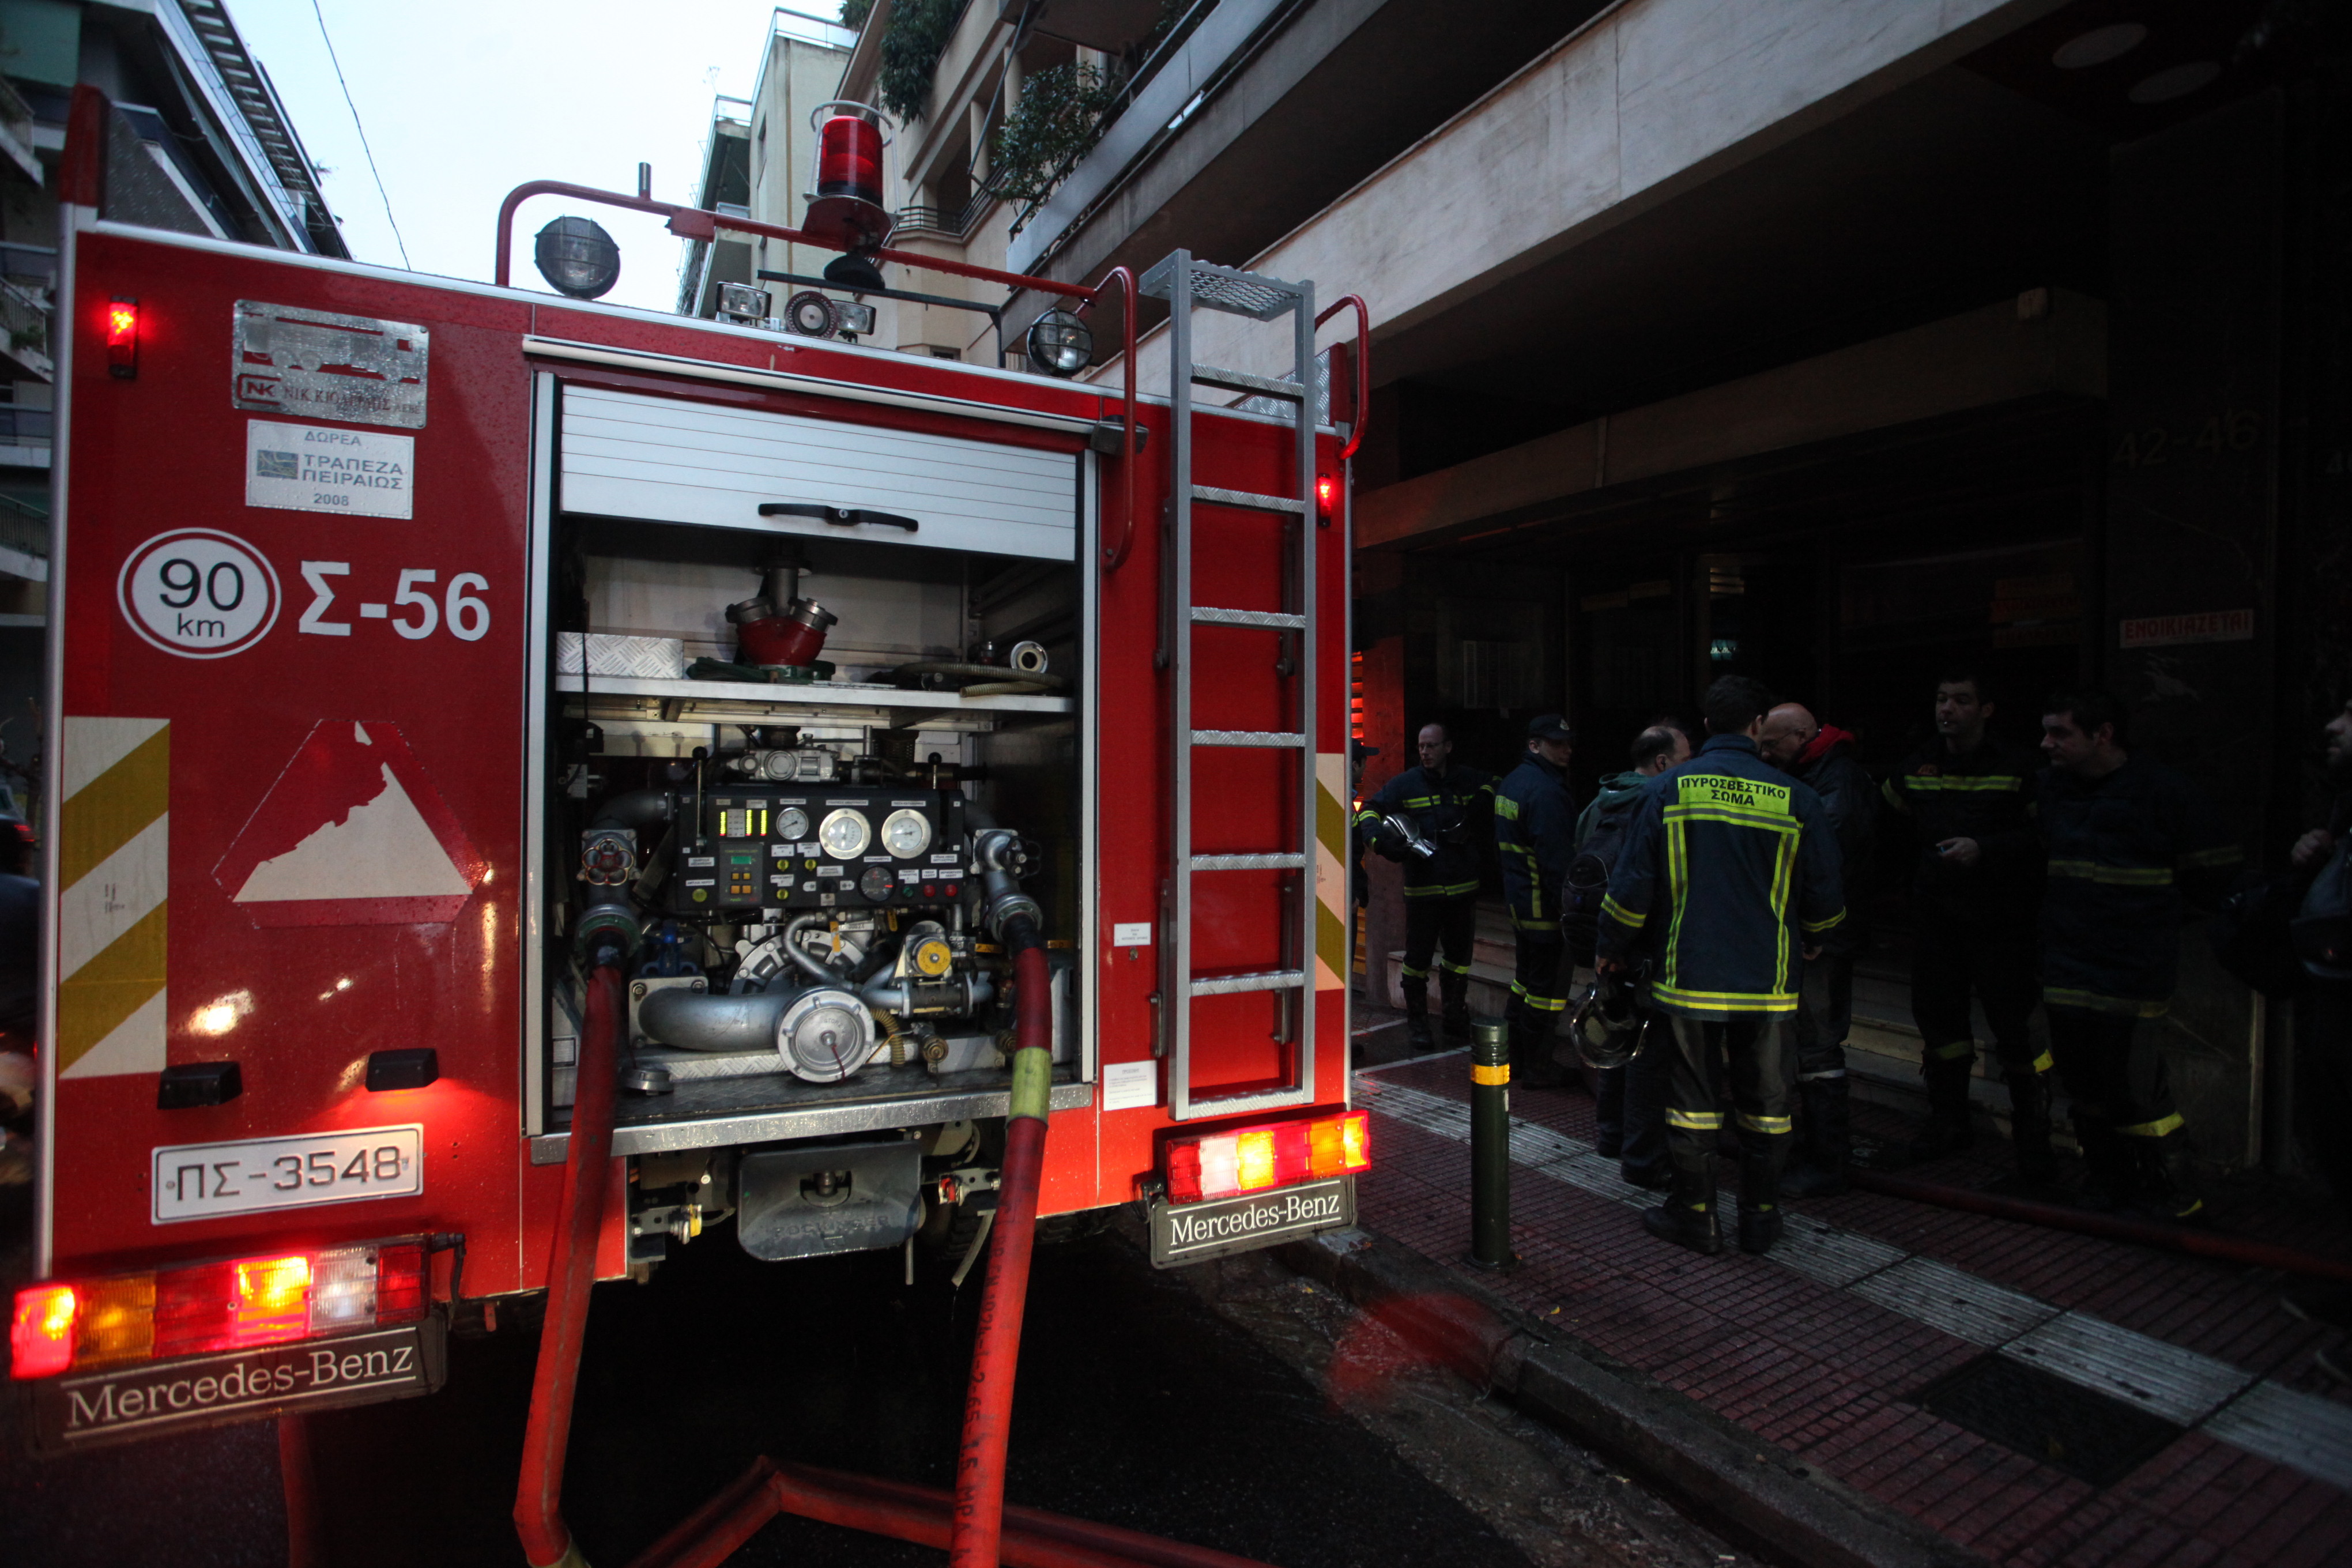 Θεσσαλονίκη: Νέα τραγωδία από φωτιά σε διαμέρισμα - Βρέθηκε σορός -  Ειδήσεις - νέα - Το Βήμα Online